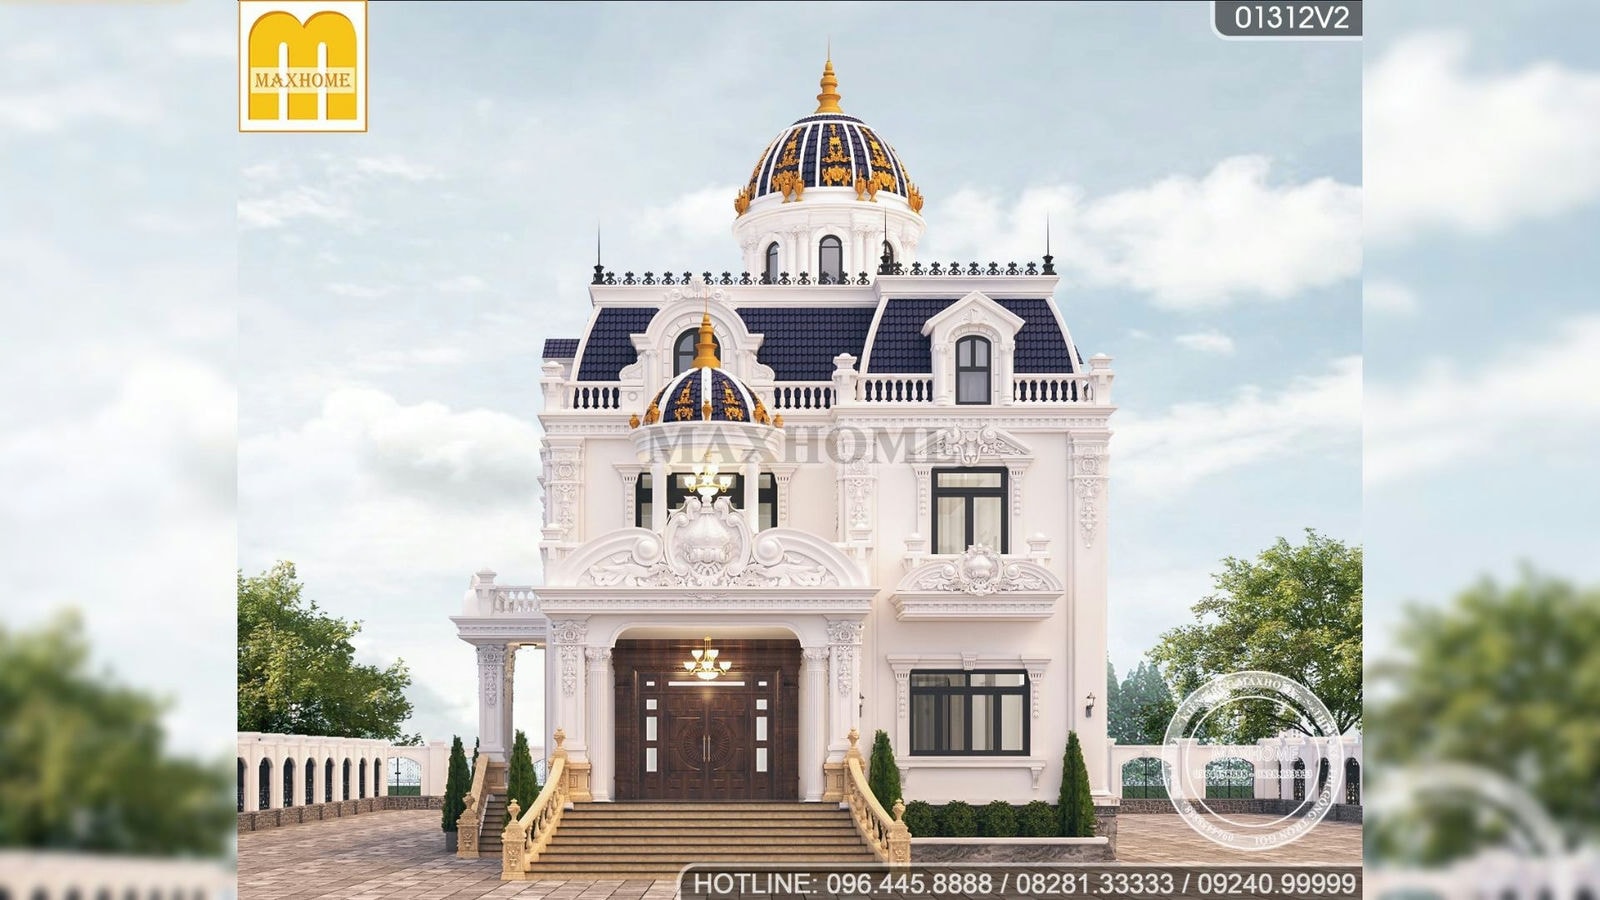 6,9 tỷ trọn gói lâu đài tân cổ điển đẹp lung linh tại Bình Phước | MH01612